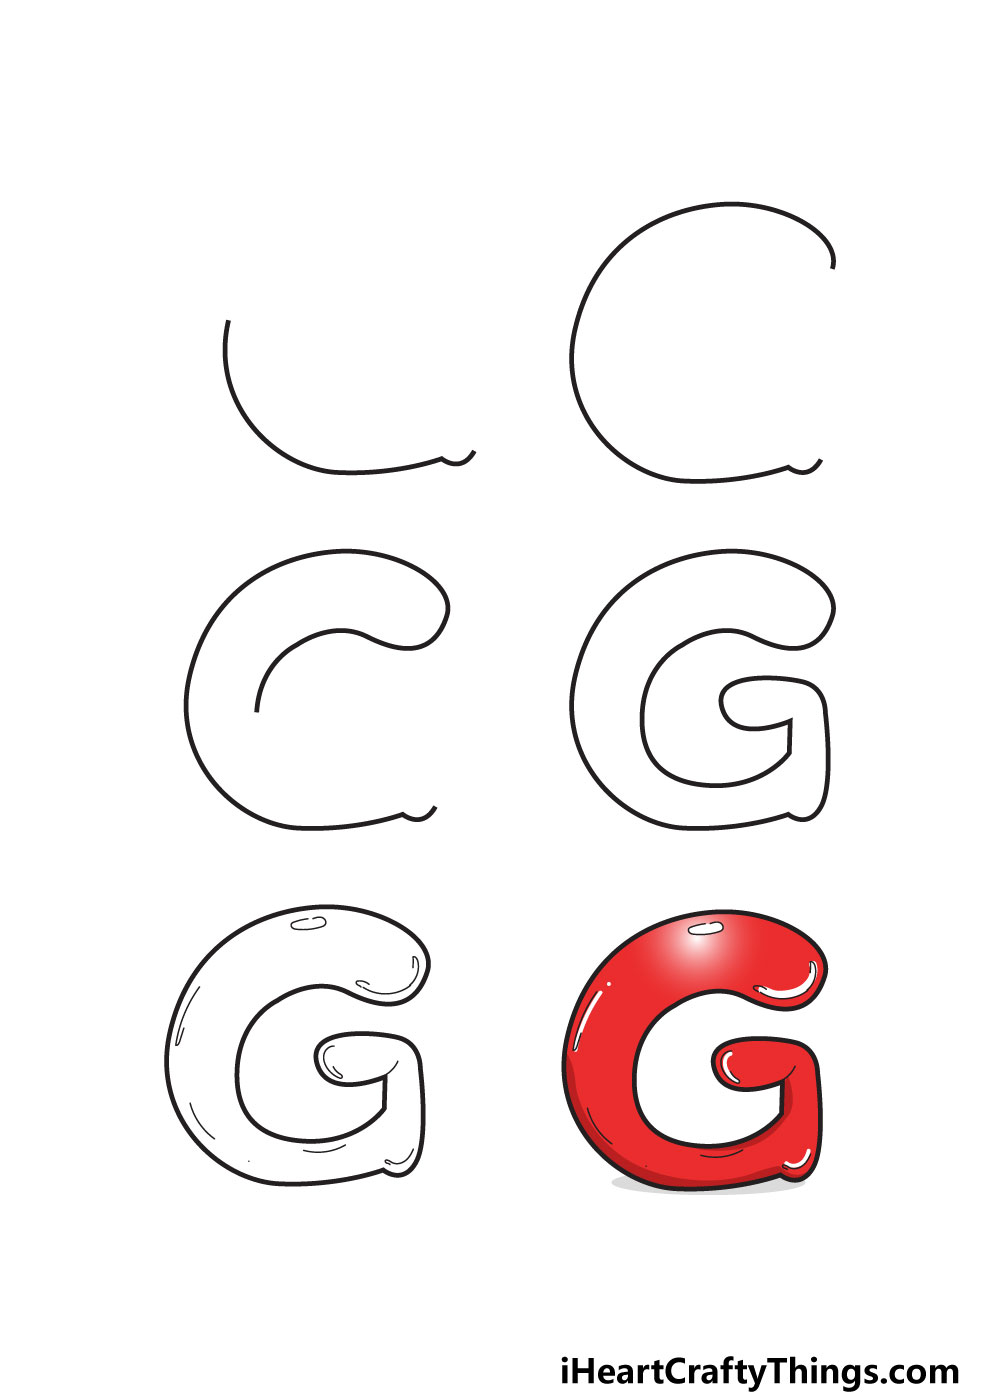 Chữ Bong Bóng Chữ G – Cách Vẽ Chữ G Bong Bóng Của Riêng Bạn - Tô Màu